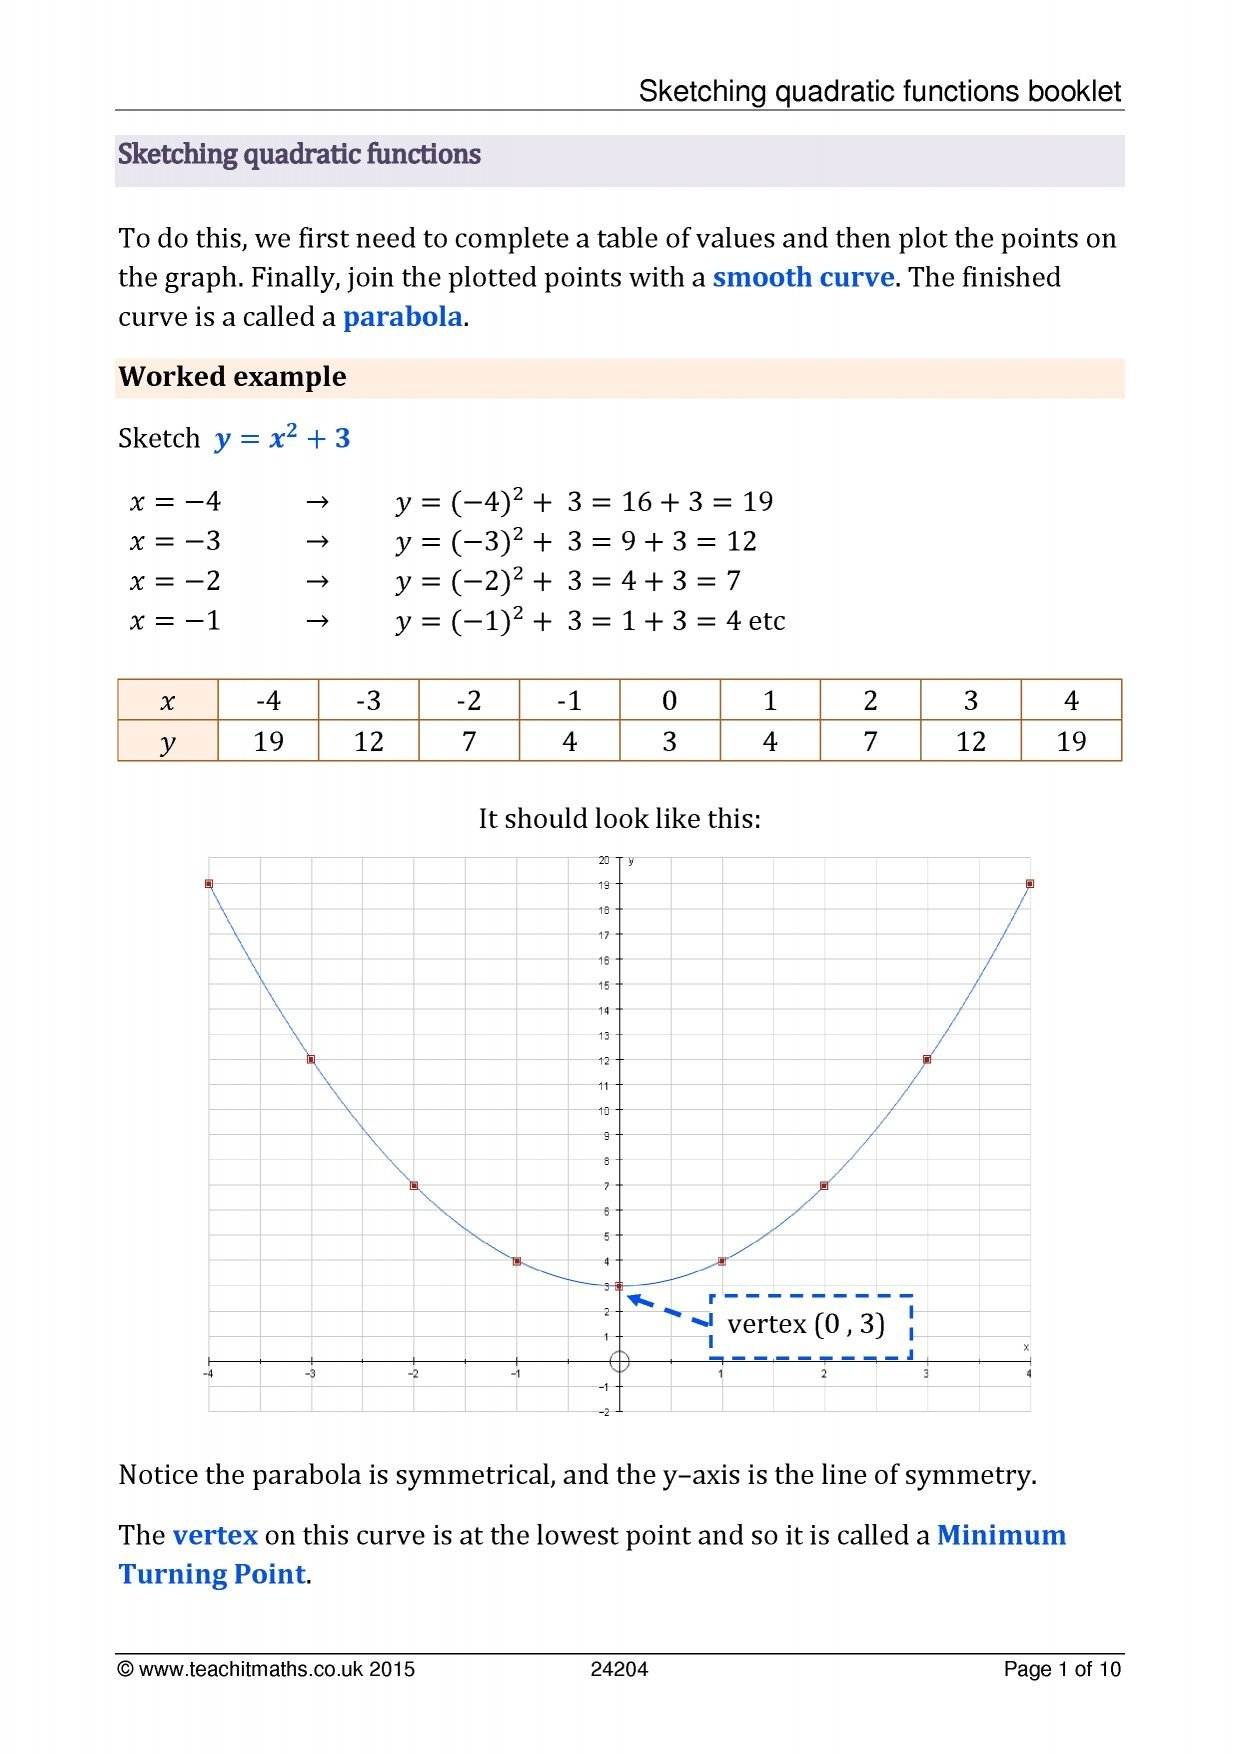 Converting Quadratic Equations Worksheet Standard To Vertex With Regard To Converting Quadratic Equations Worksheet Standard To Vertex